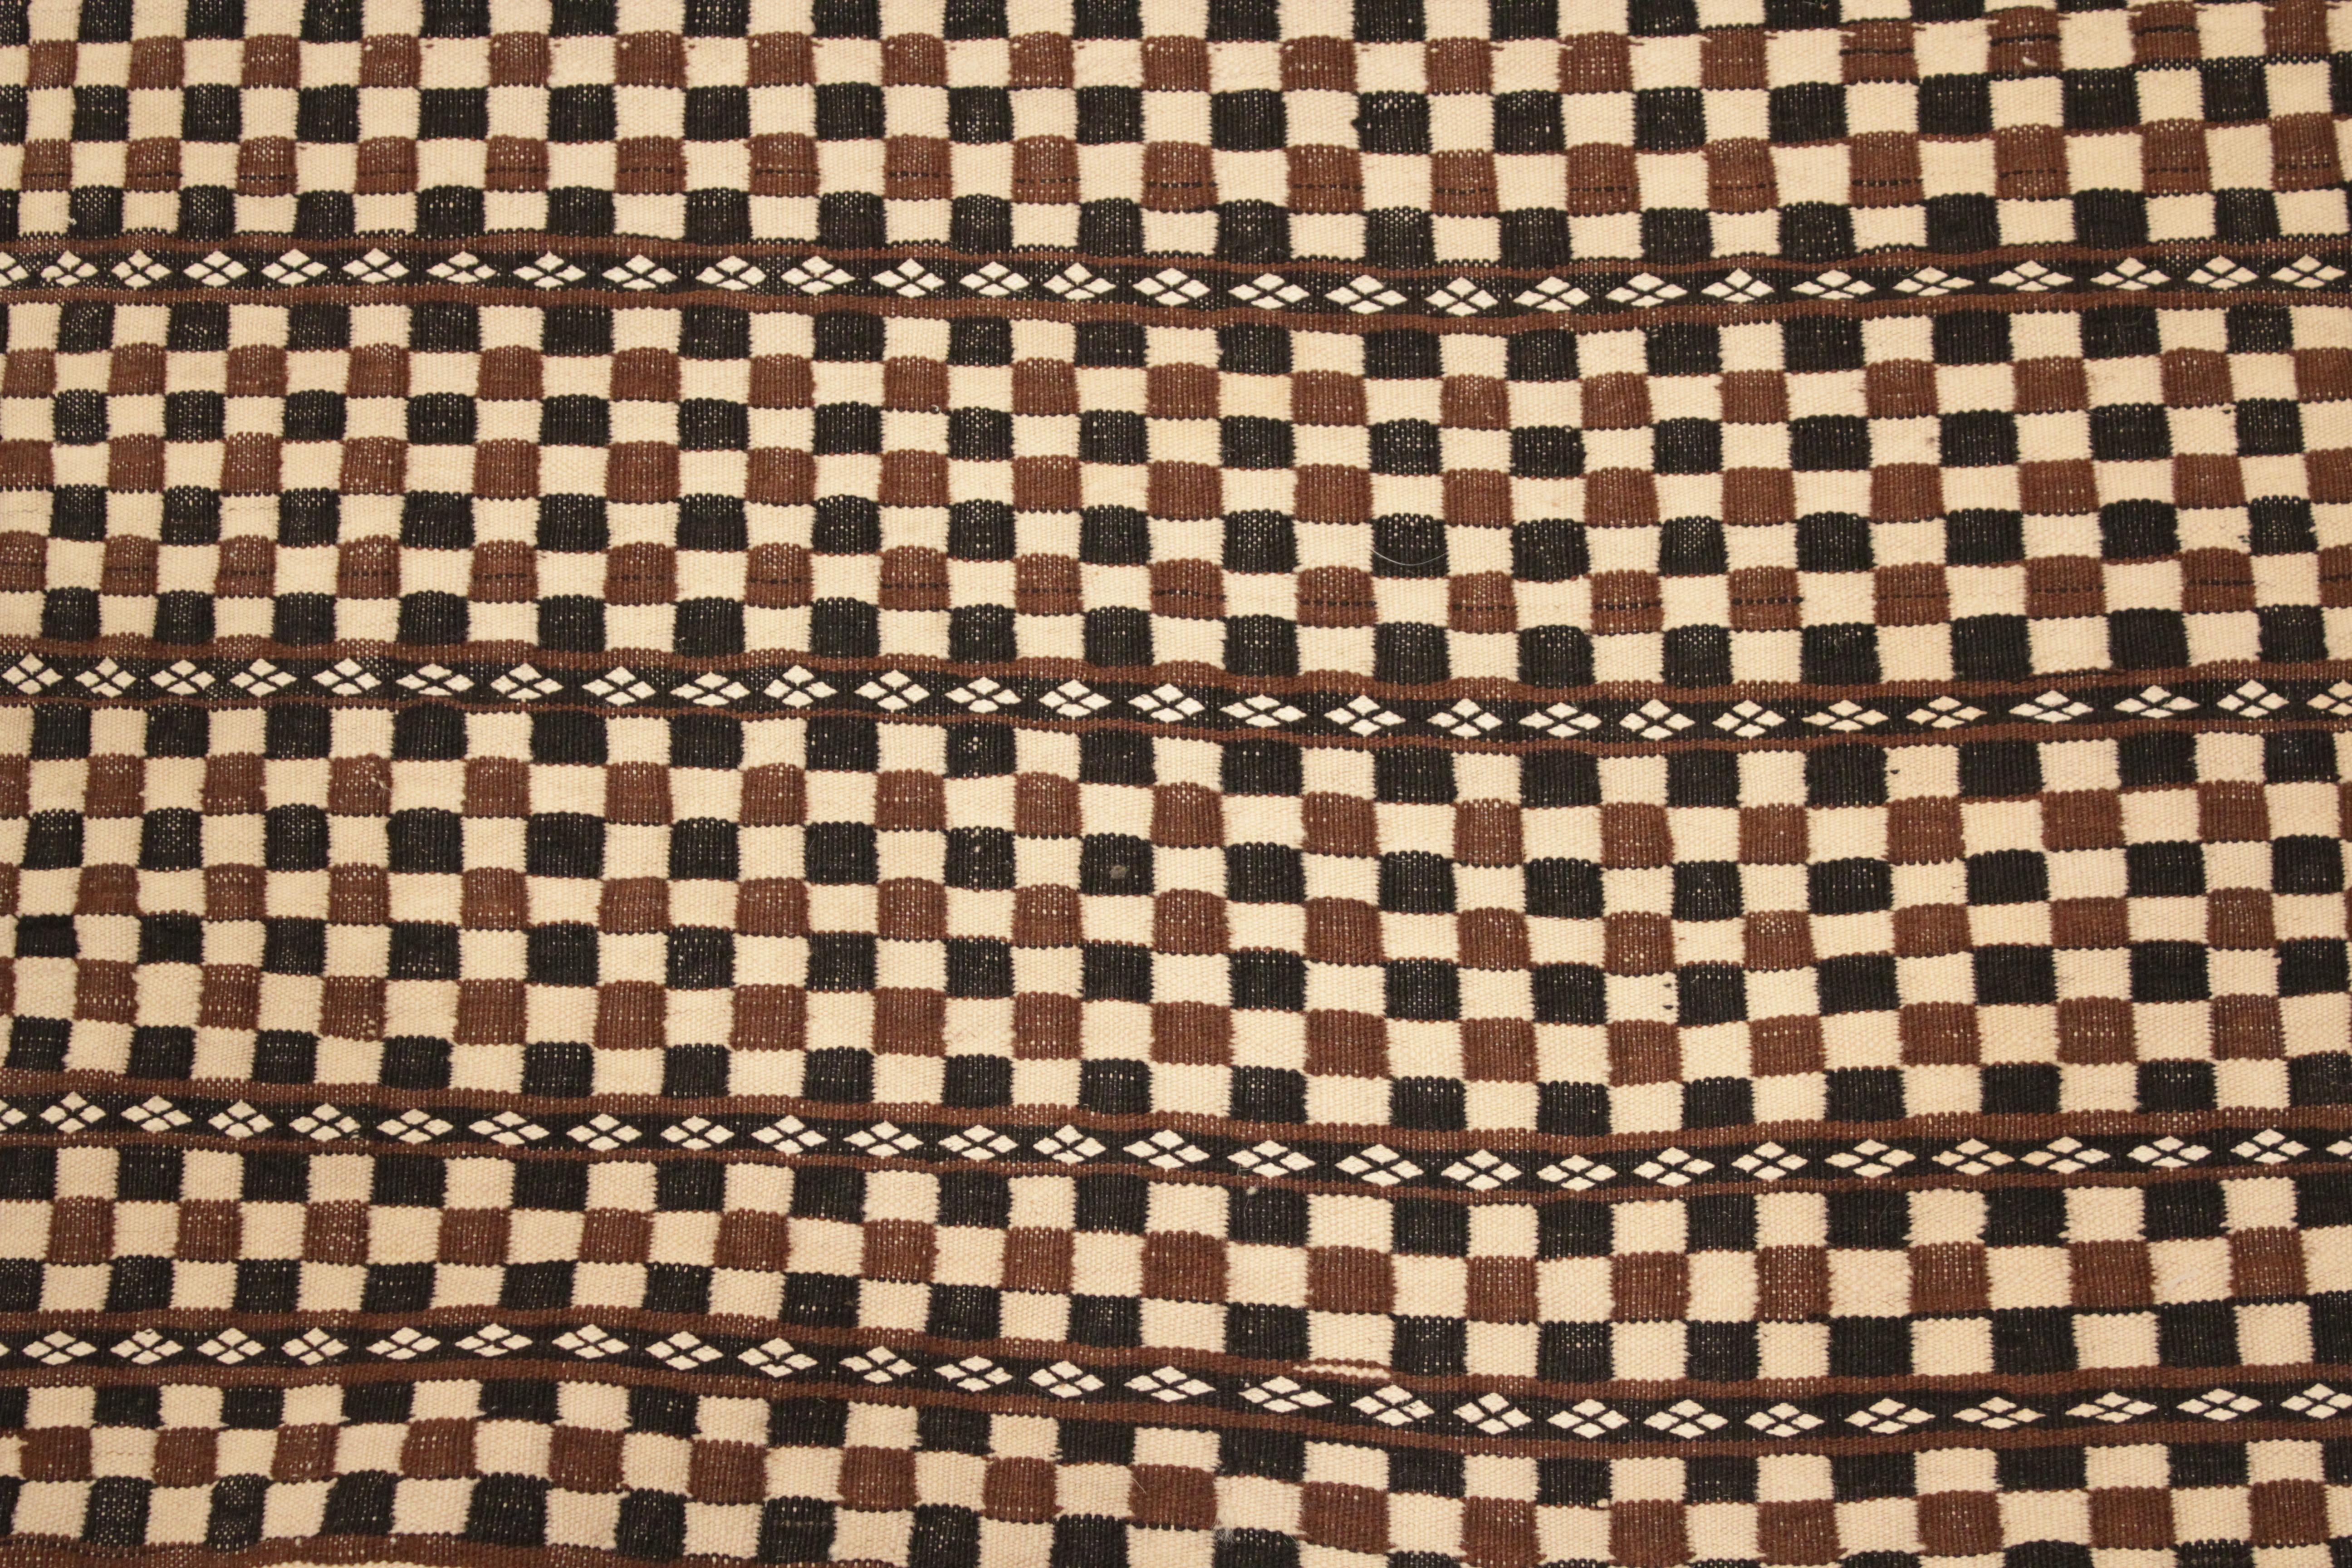 Ein sehr elegantes und raffiniertes Berbergeflecht, bestehend aus einer wabenförmigen Anordnung von elfenbeinfarbenen, schokoladenbraunen und schwarzen Quadraten in horizontalen Fächern. Die extreme Feinheit der Knüpfung und die Einzigartigkeit des